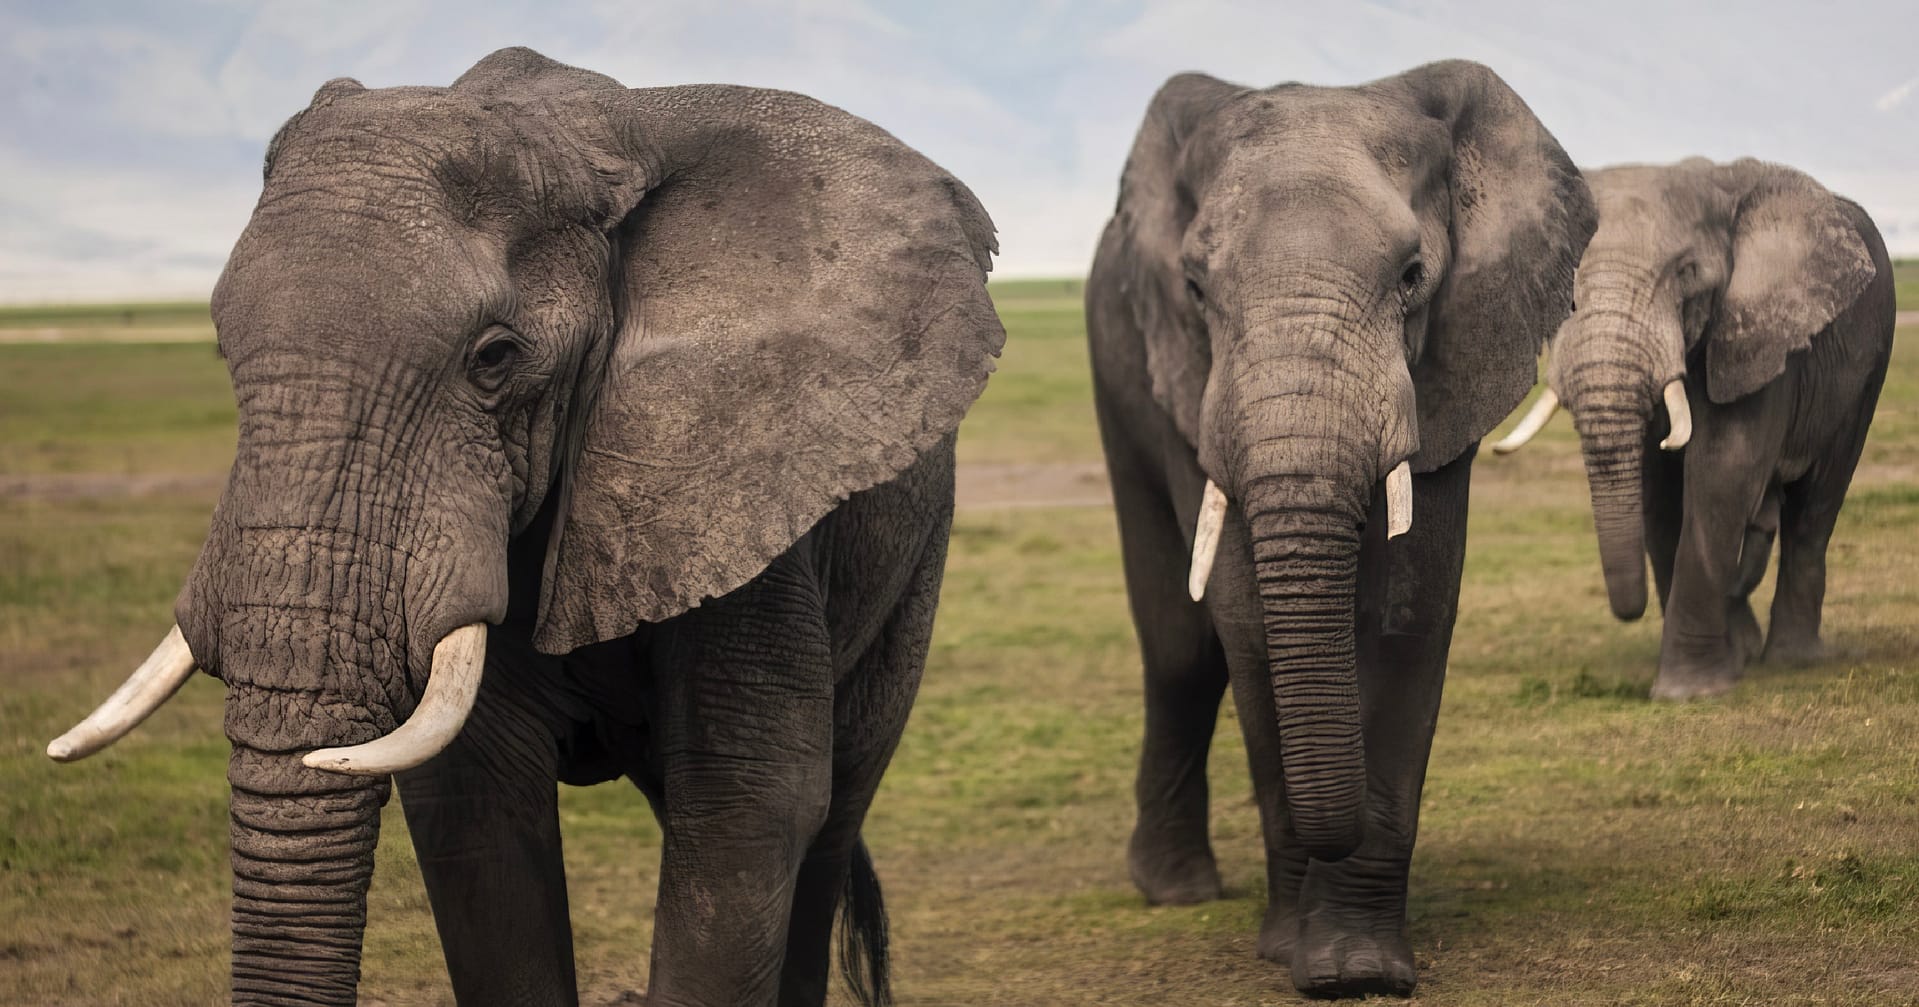 Three elephants walking in a line.